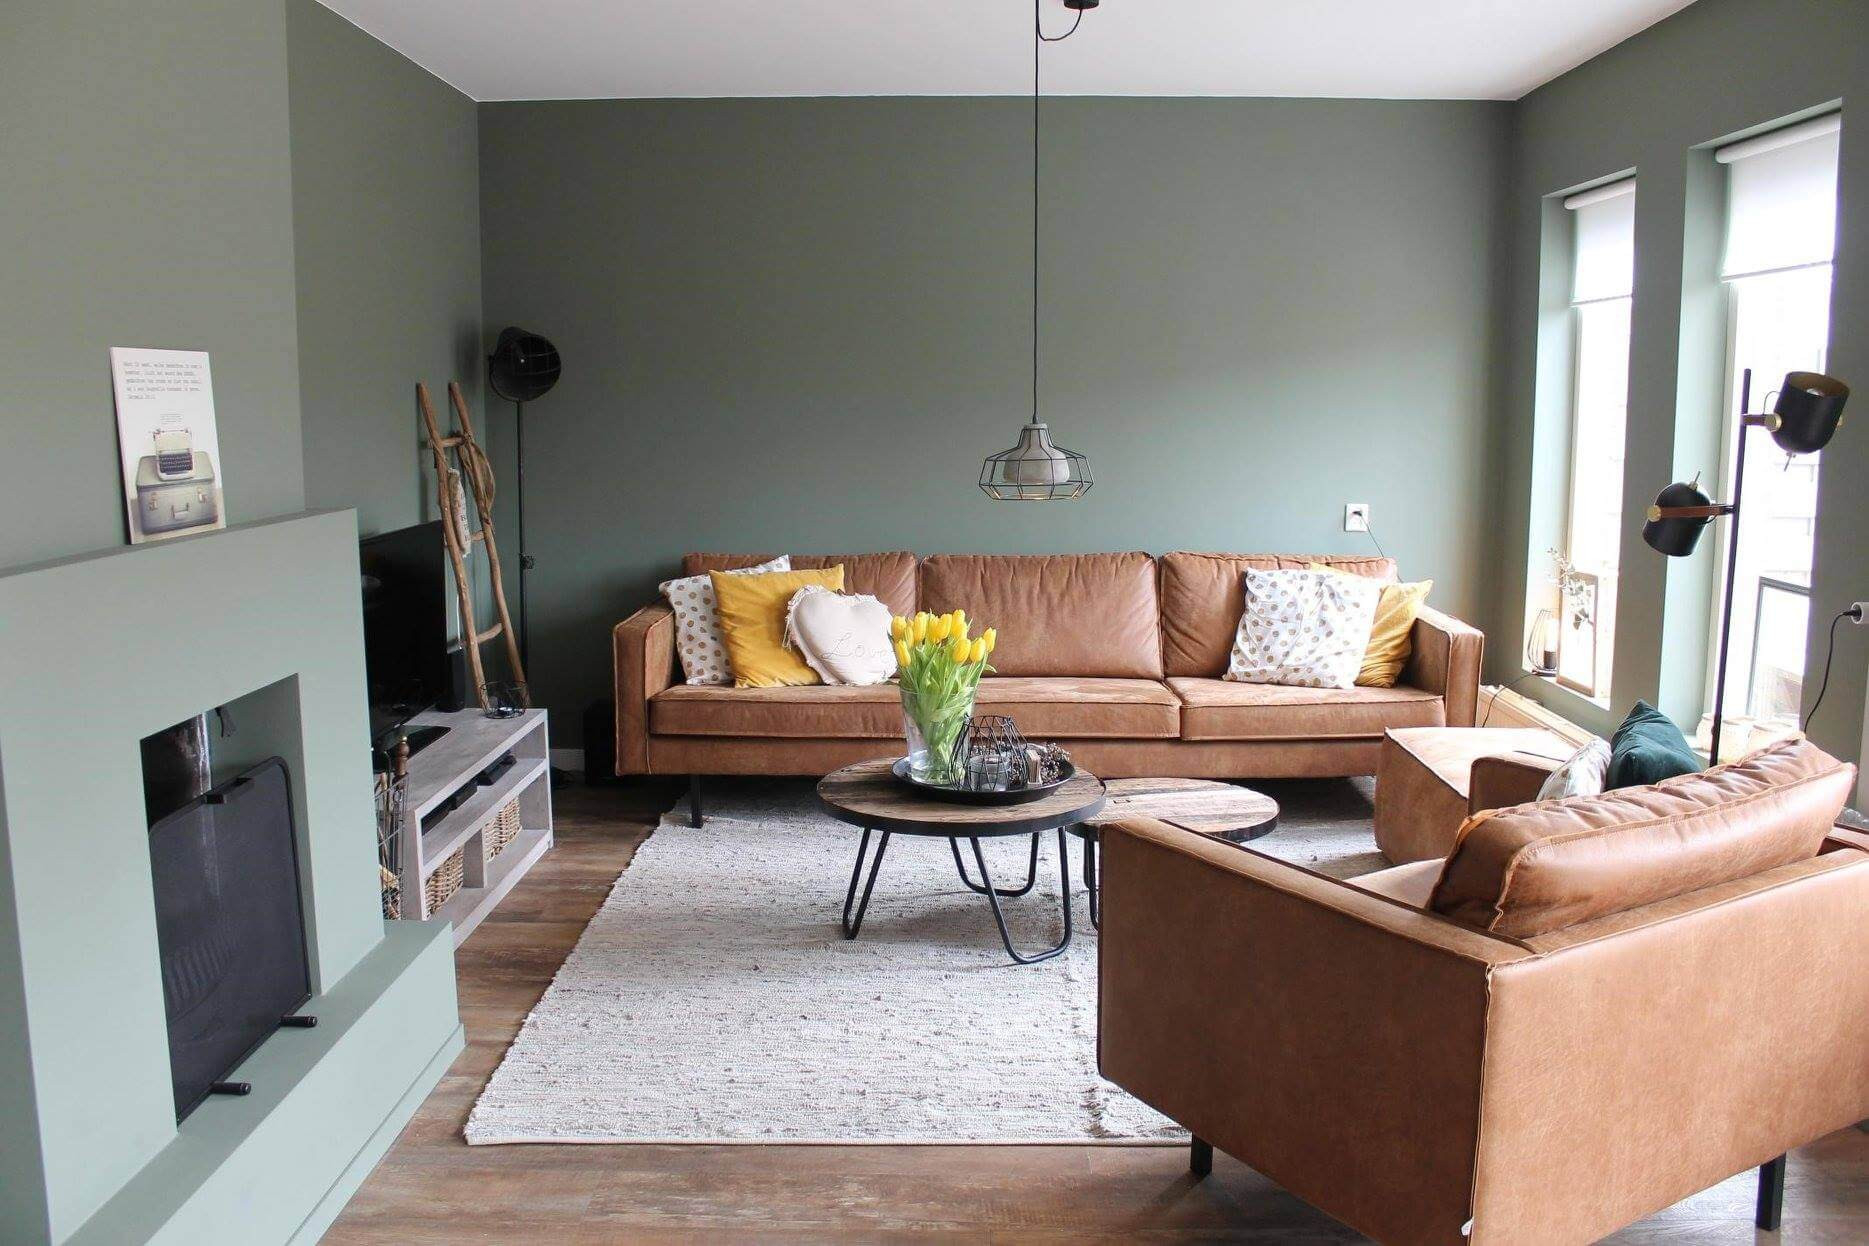 Wohnzimmer Wandgestaltung: Ideen &amp; Die Richtige Farbwahl! within Wandgestaltung Wohnzimmer Bilder